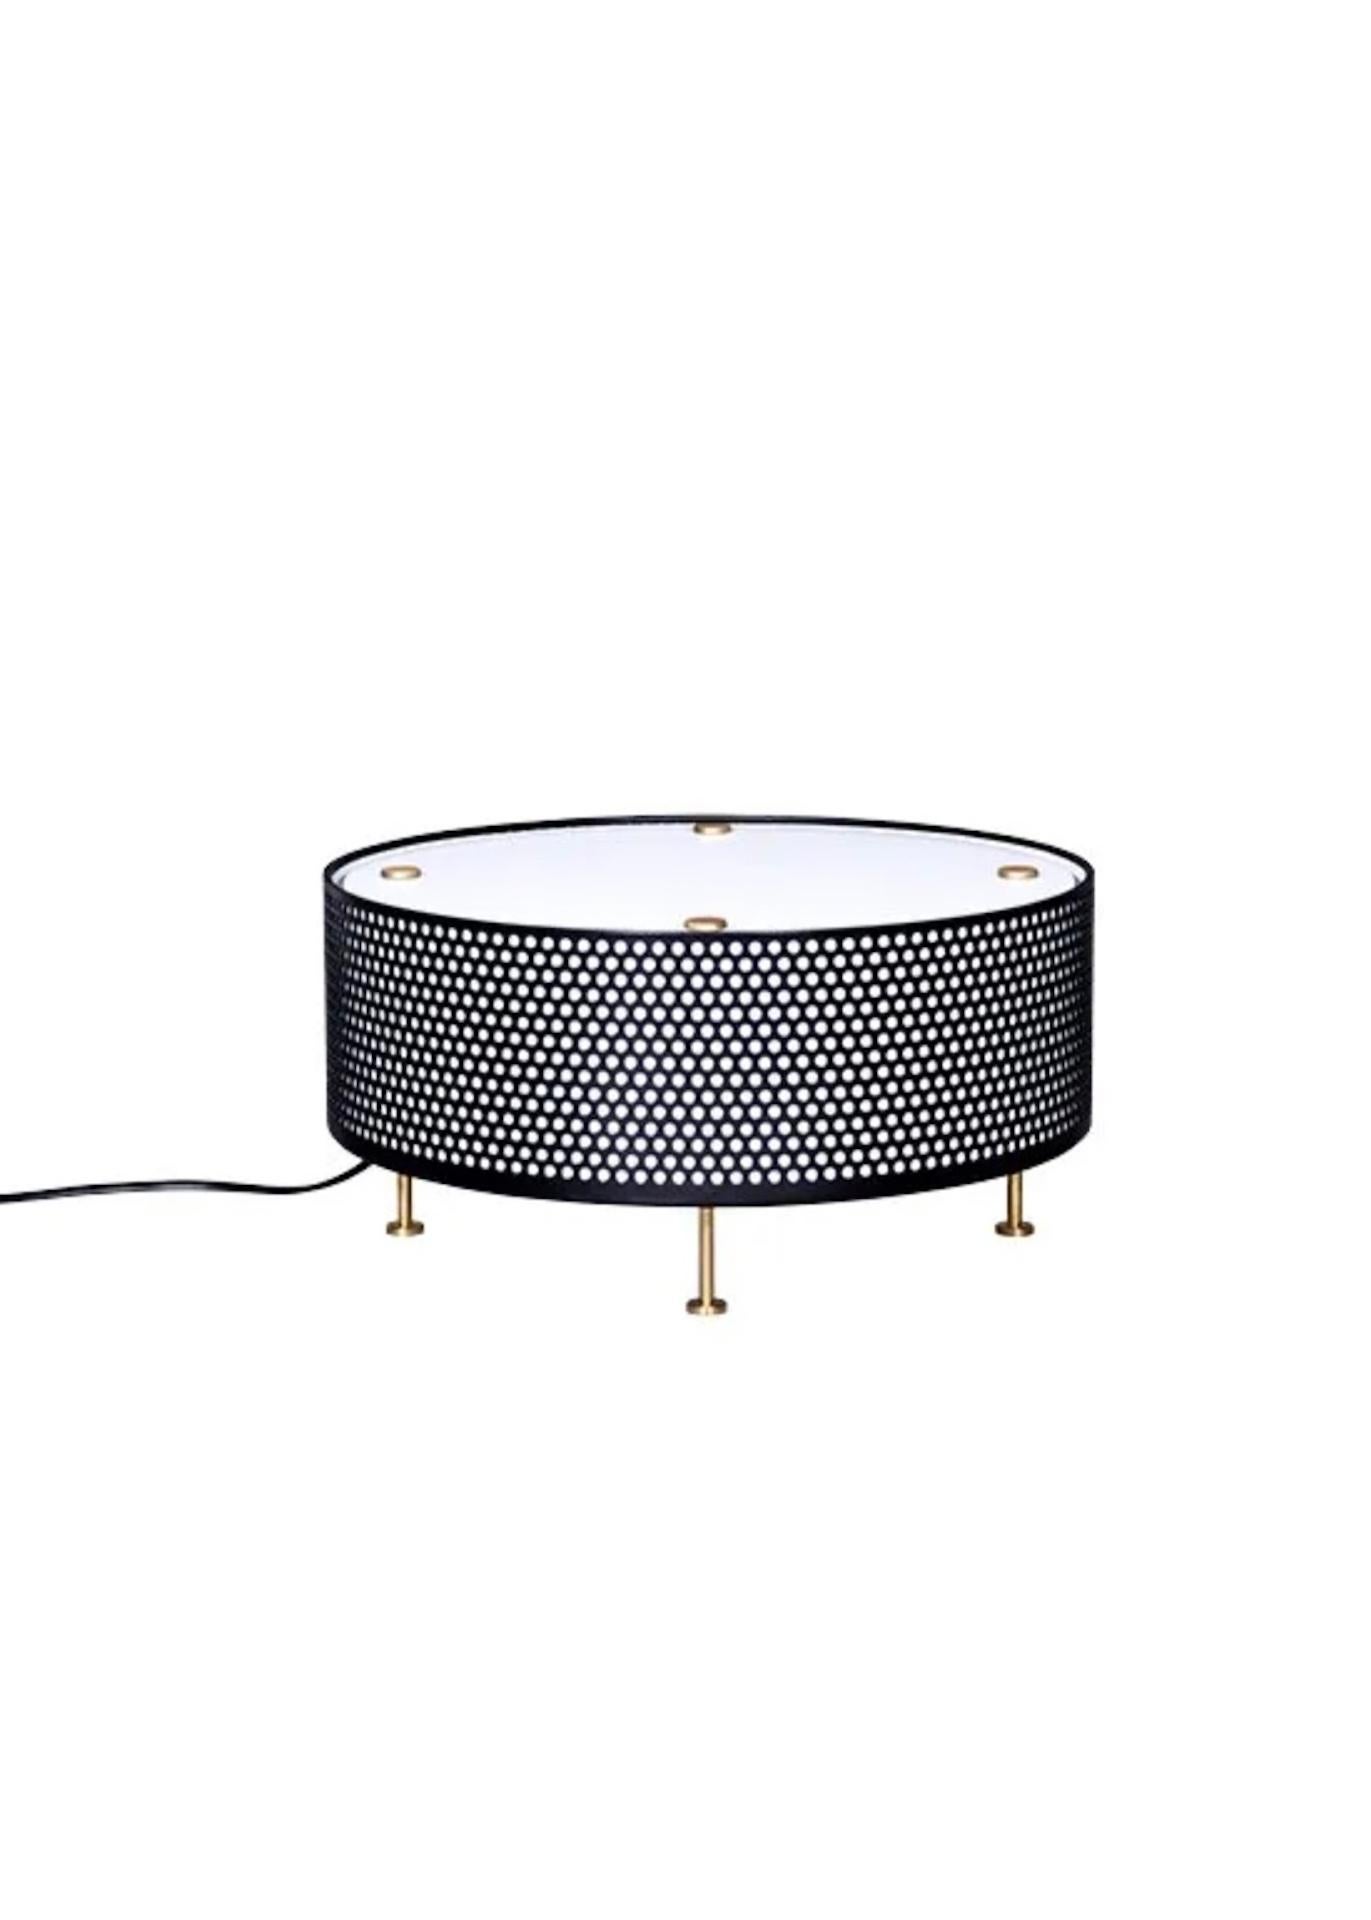 Diese Tischleuchte G50 verwendet einen Streuschirm, der eine mit einer Opalfolie ausgekleidete Lochblechtrommel verschließt, und wird von vier Messingfüßen getragen. Diese Leuchte gibt das Licht live an ihren Sockel zurück, durch Reflexion auf der